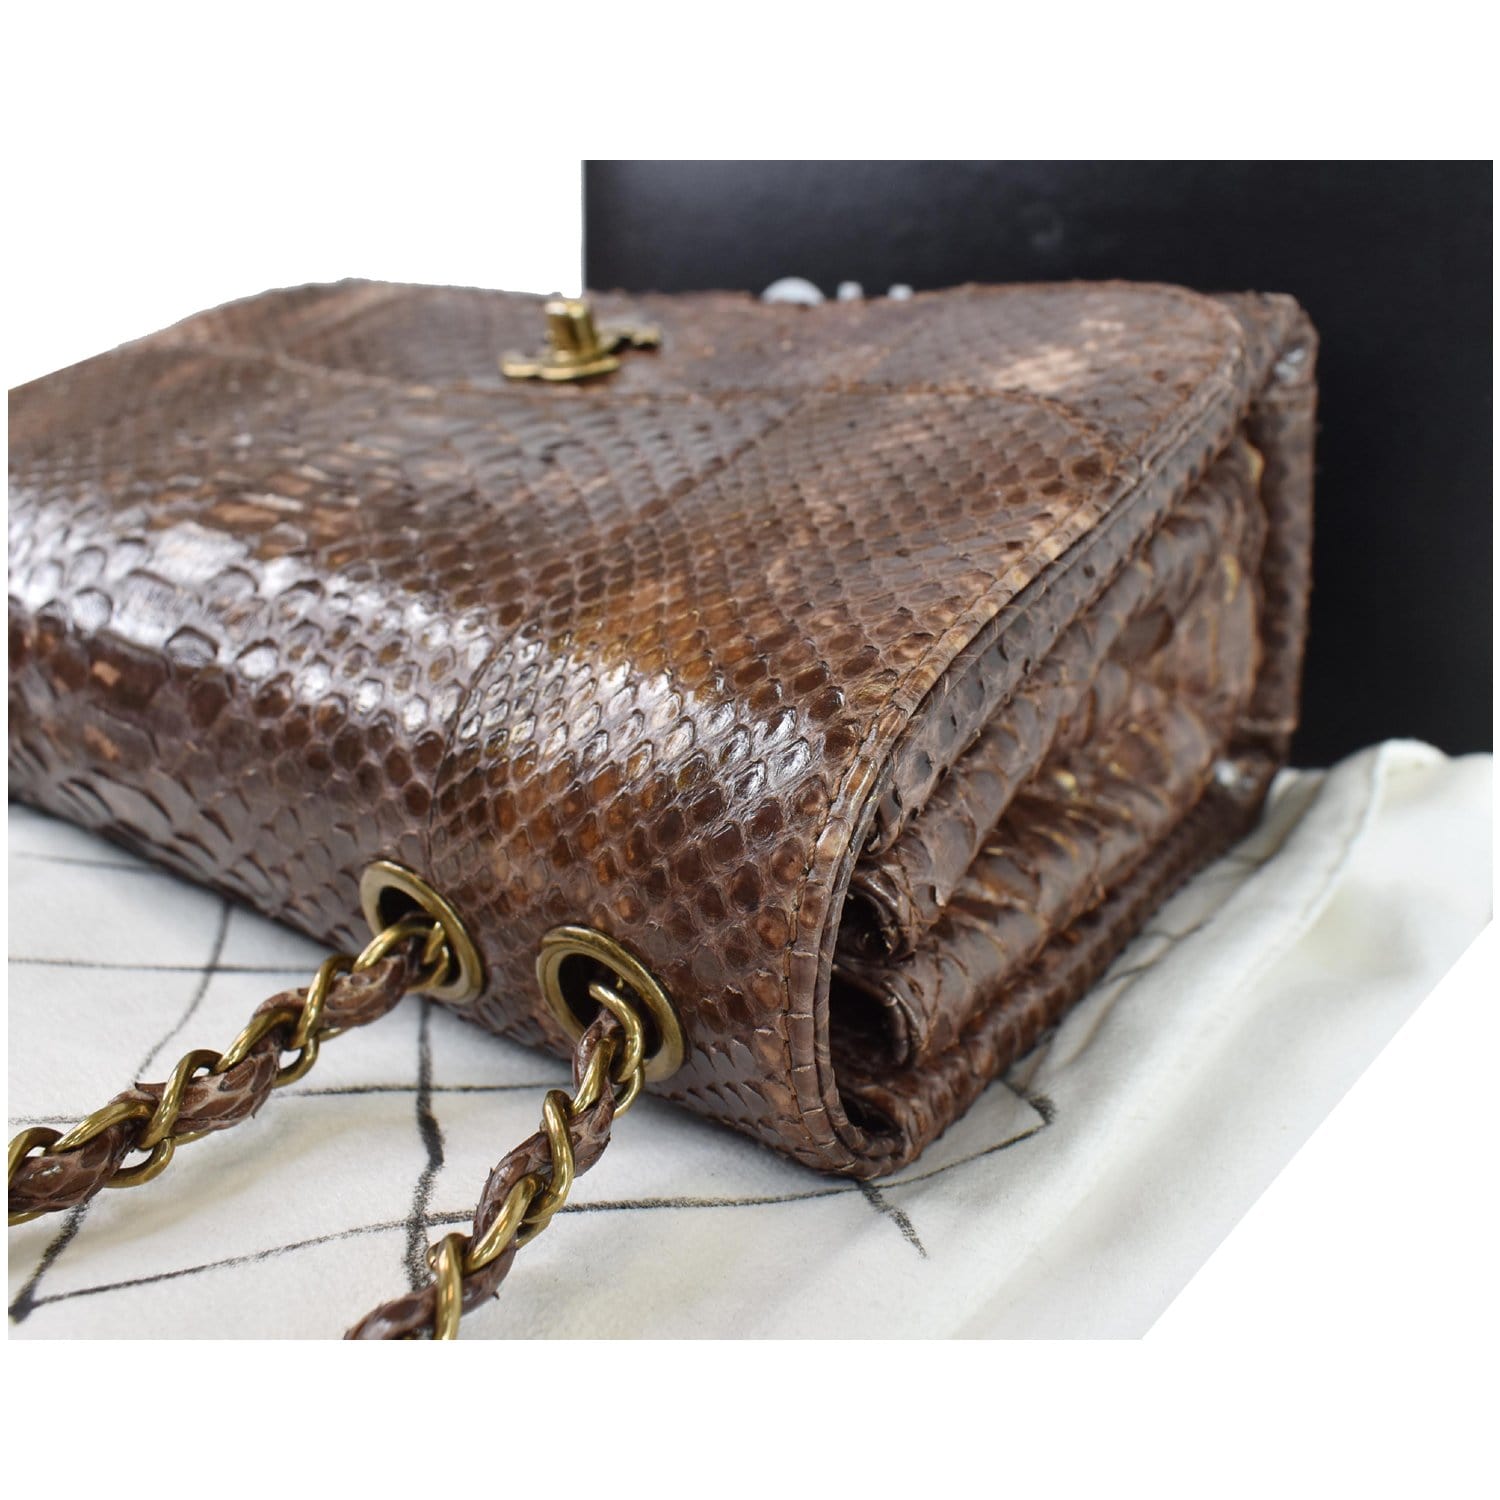 Buy Python Bag brown Bag speedy Bag brown Leather Bag gift for